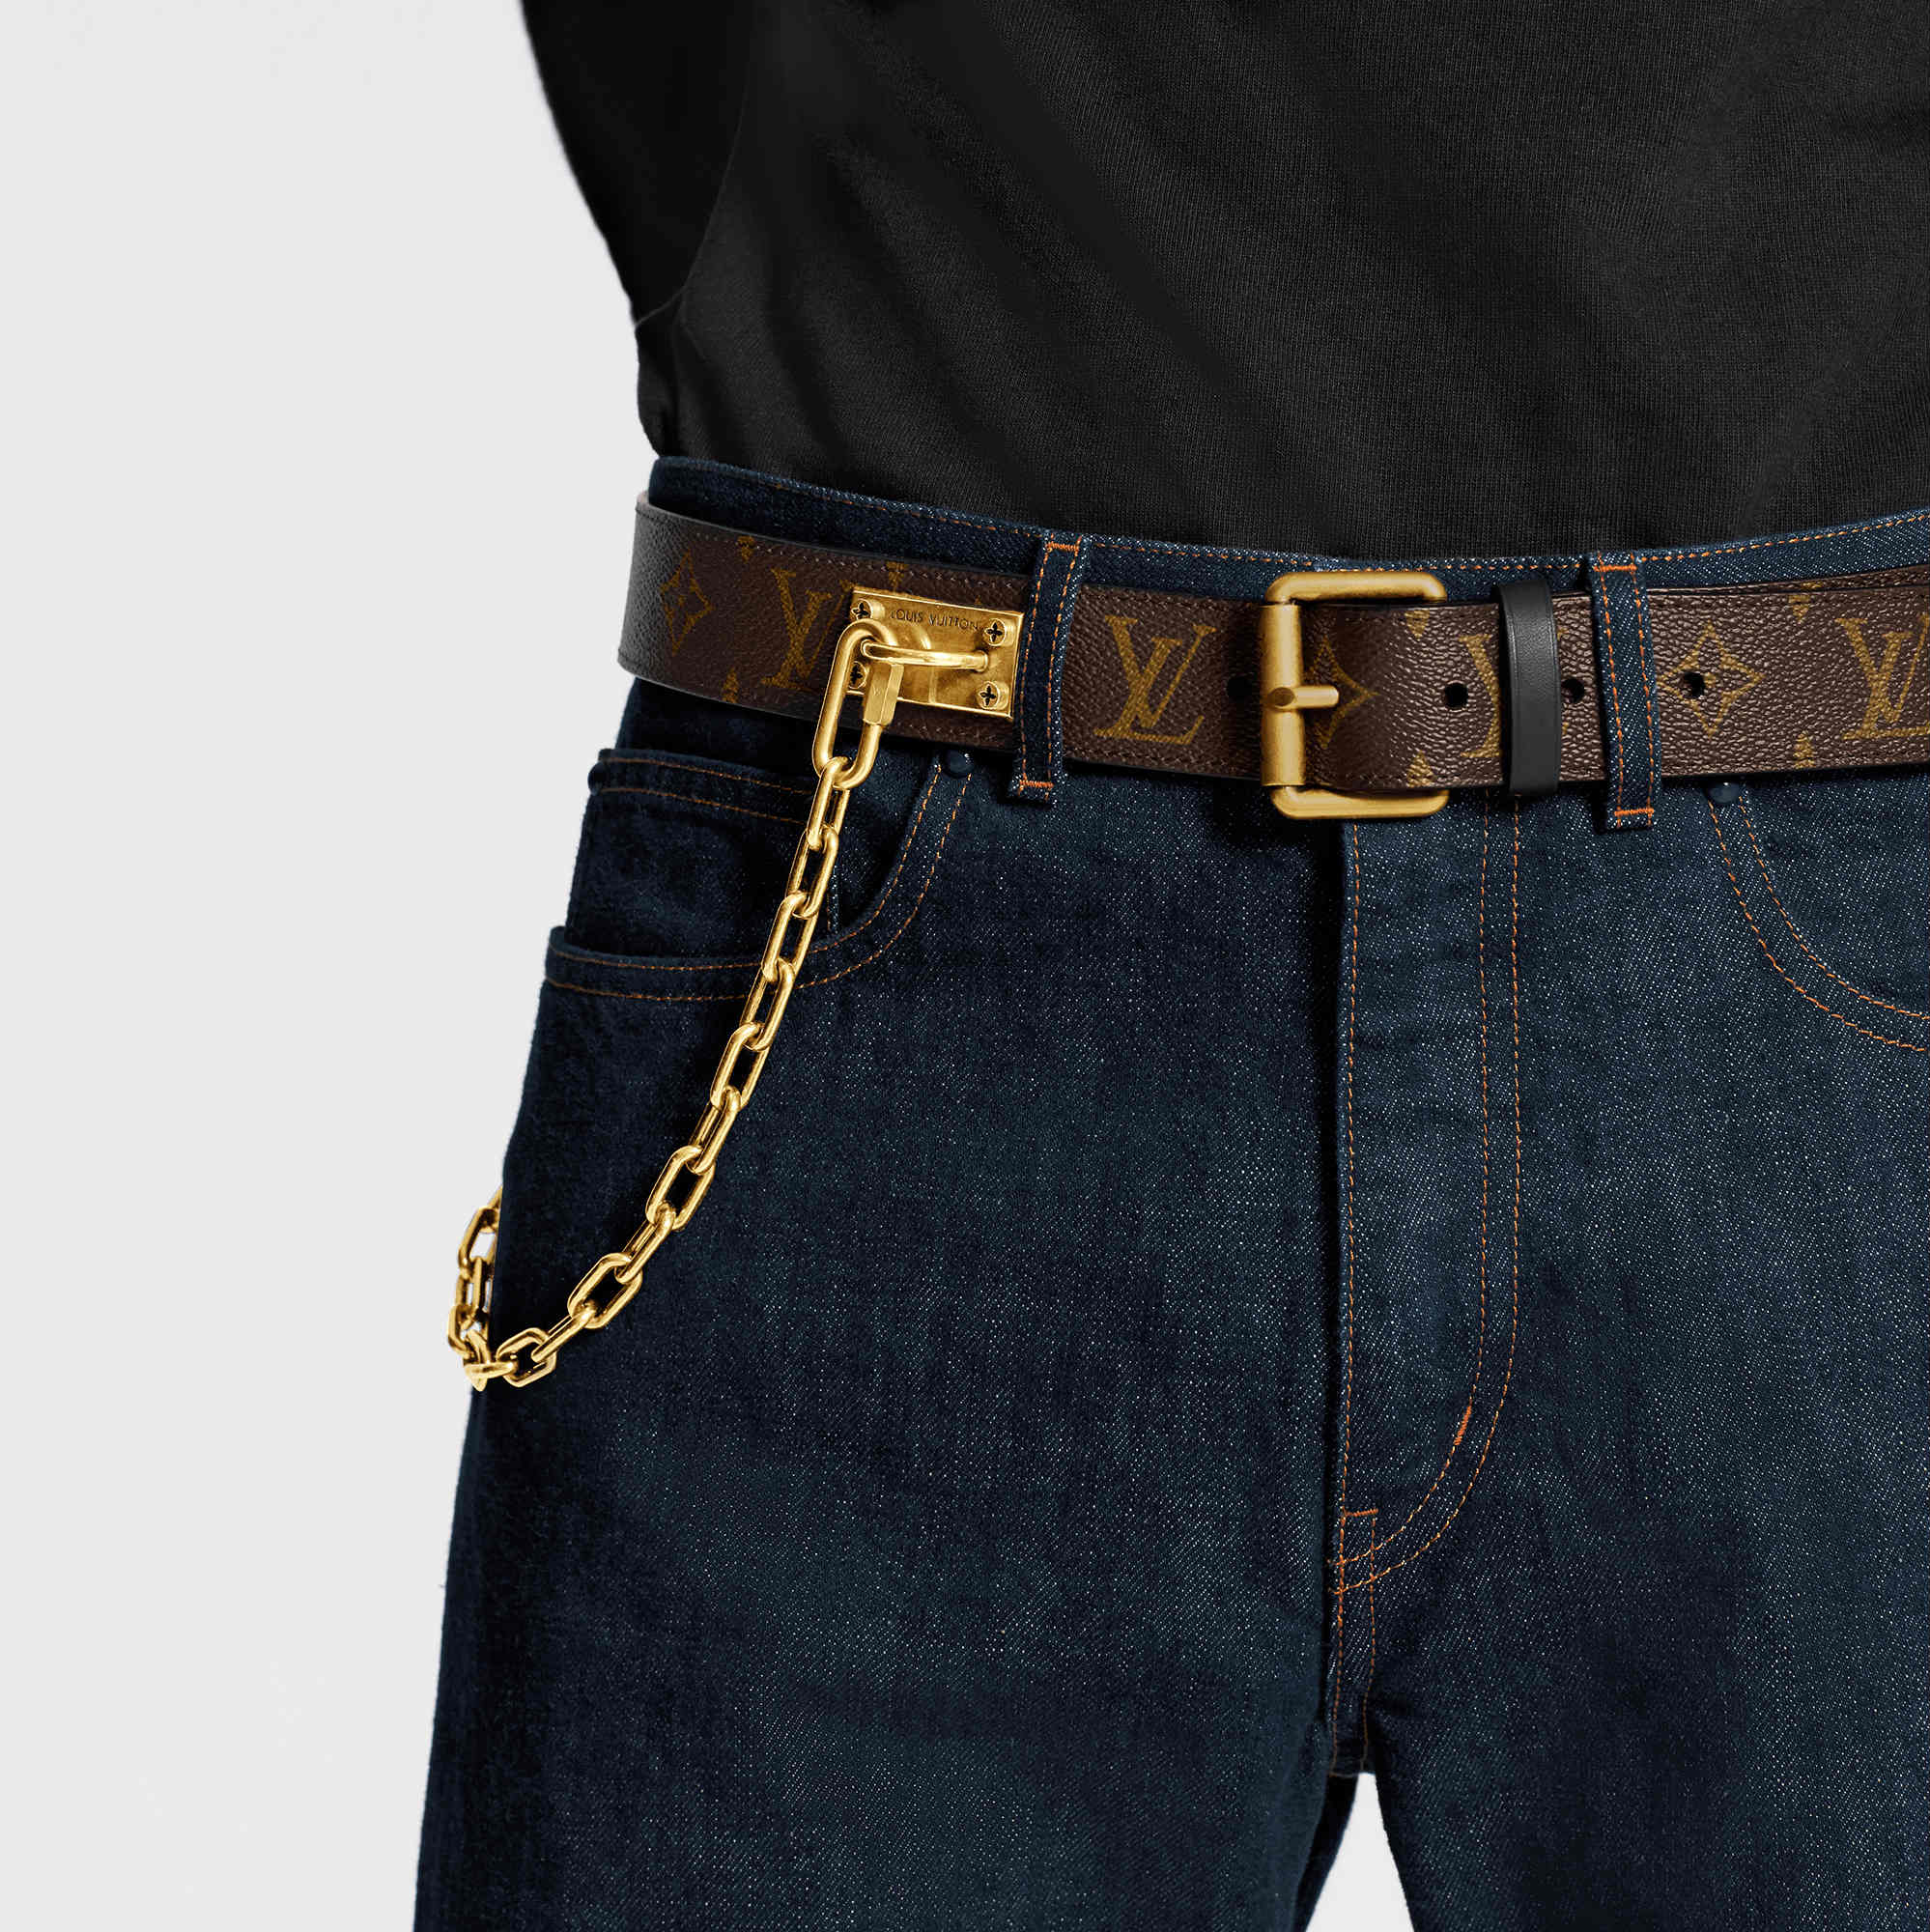 El cinturón clásico para hombres da un giro divertido y moderno